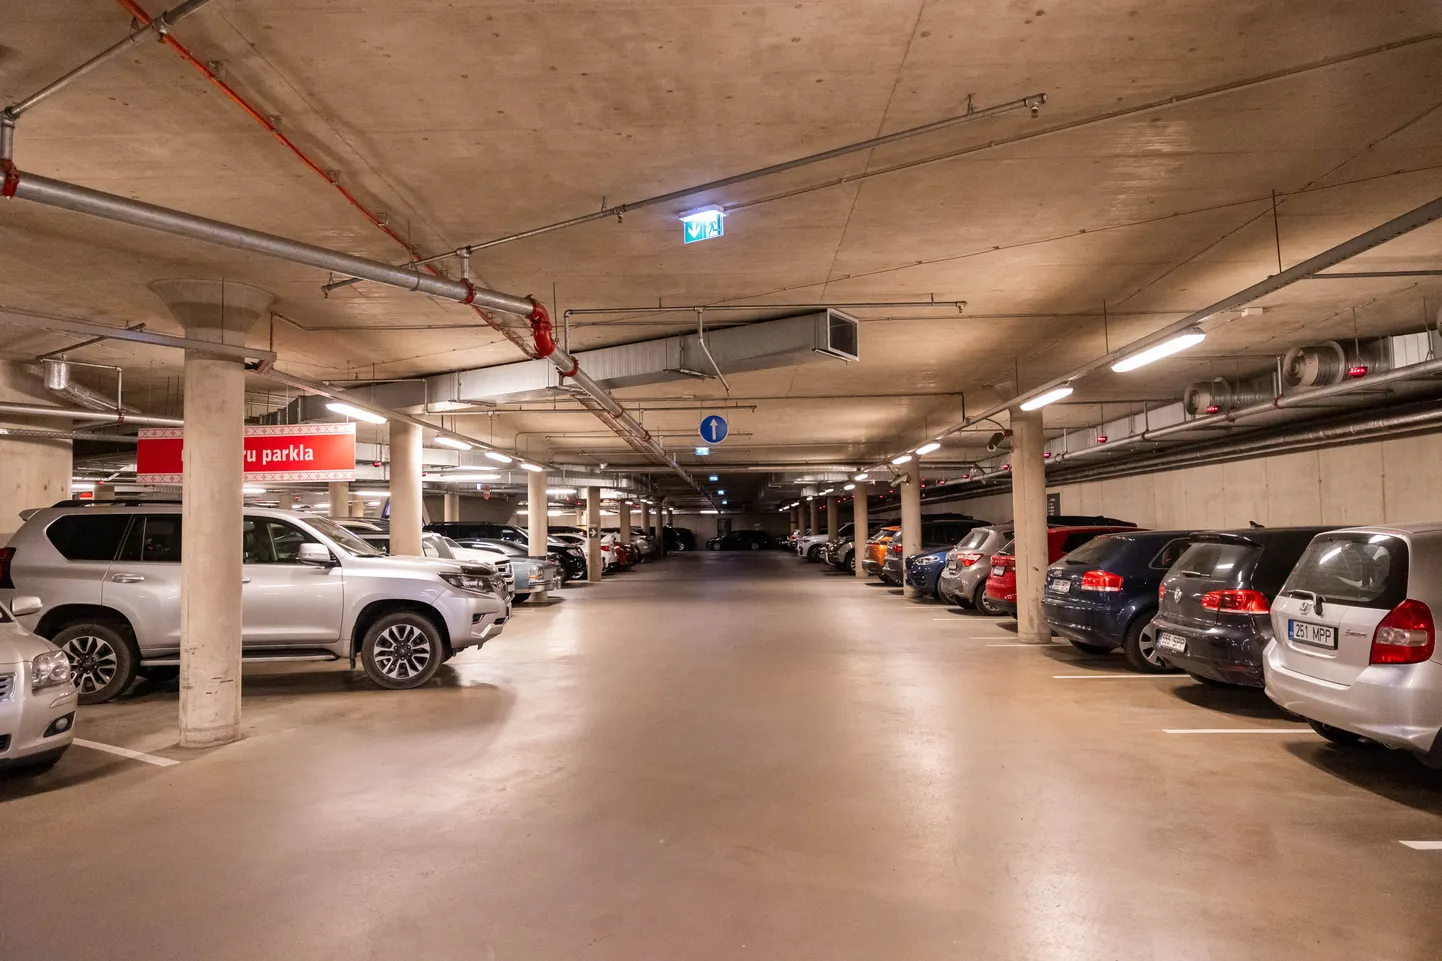 Balti jaama turu Europargi parkimismaja 8. augusti hommikul kell 6. Tasuta parkimine tormihoiatuse tõttu